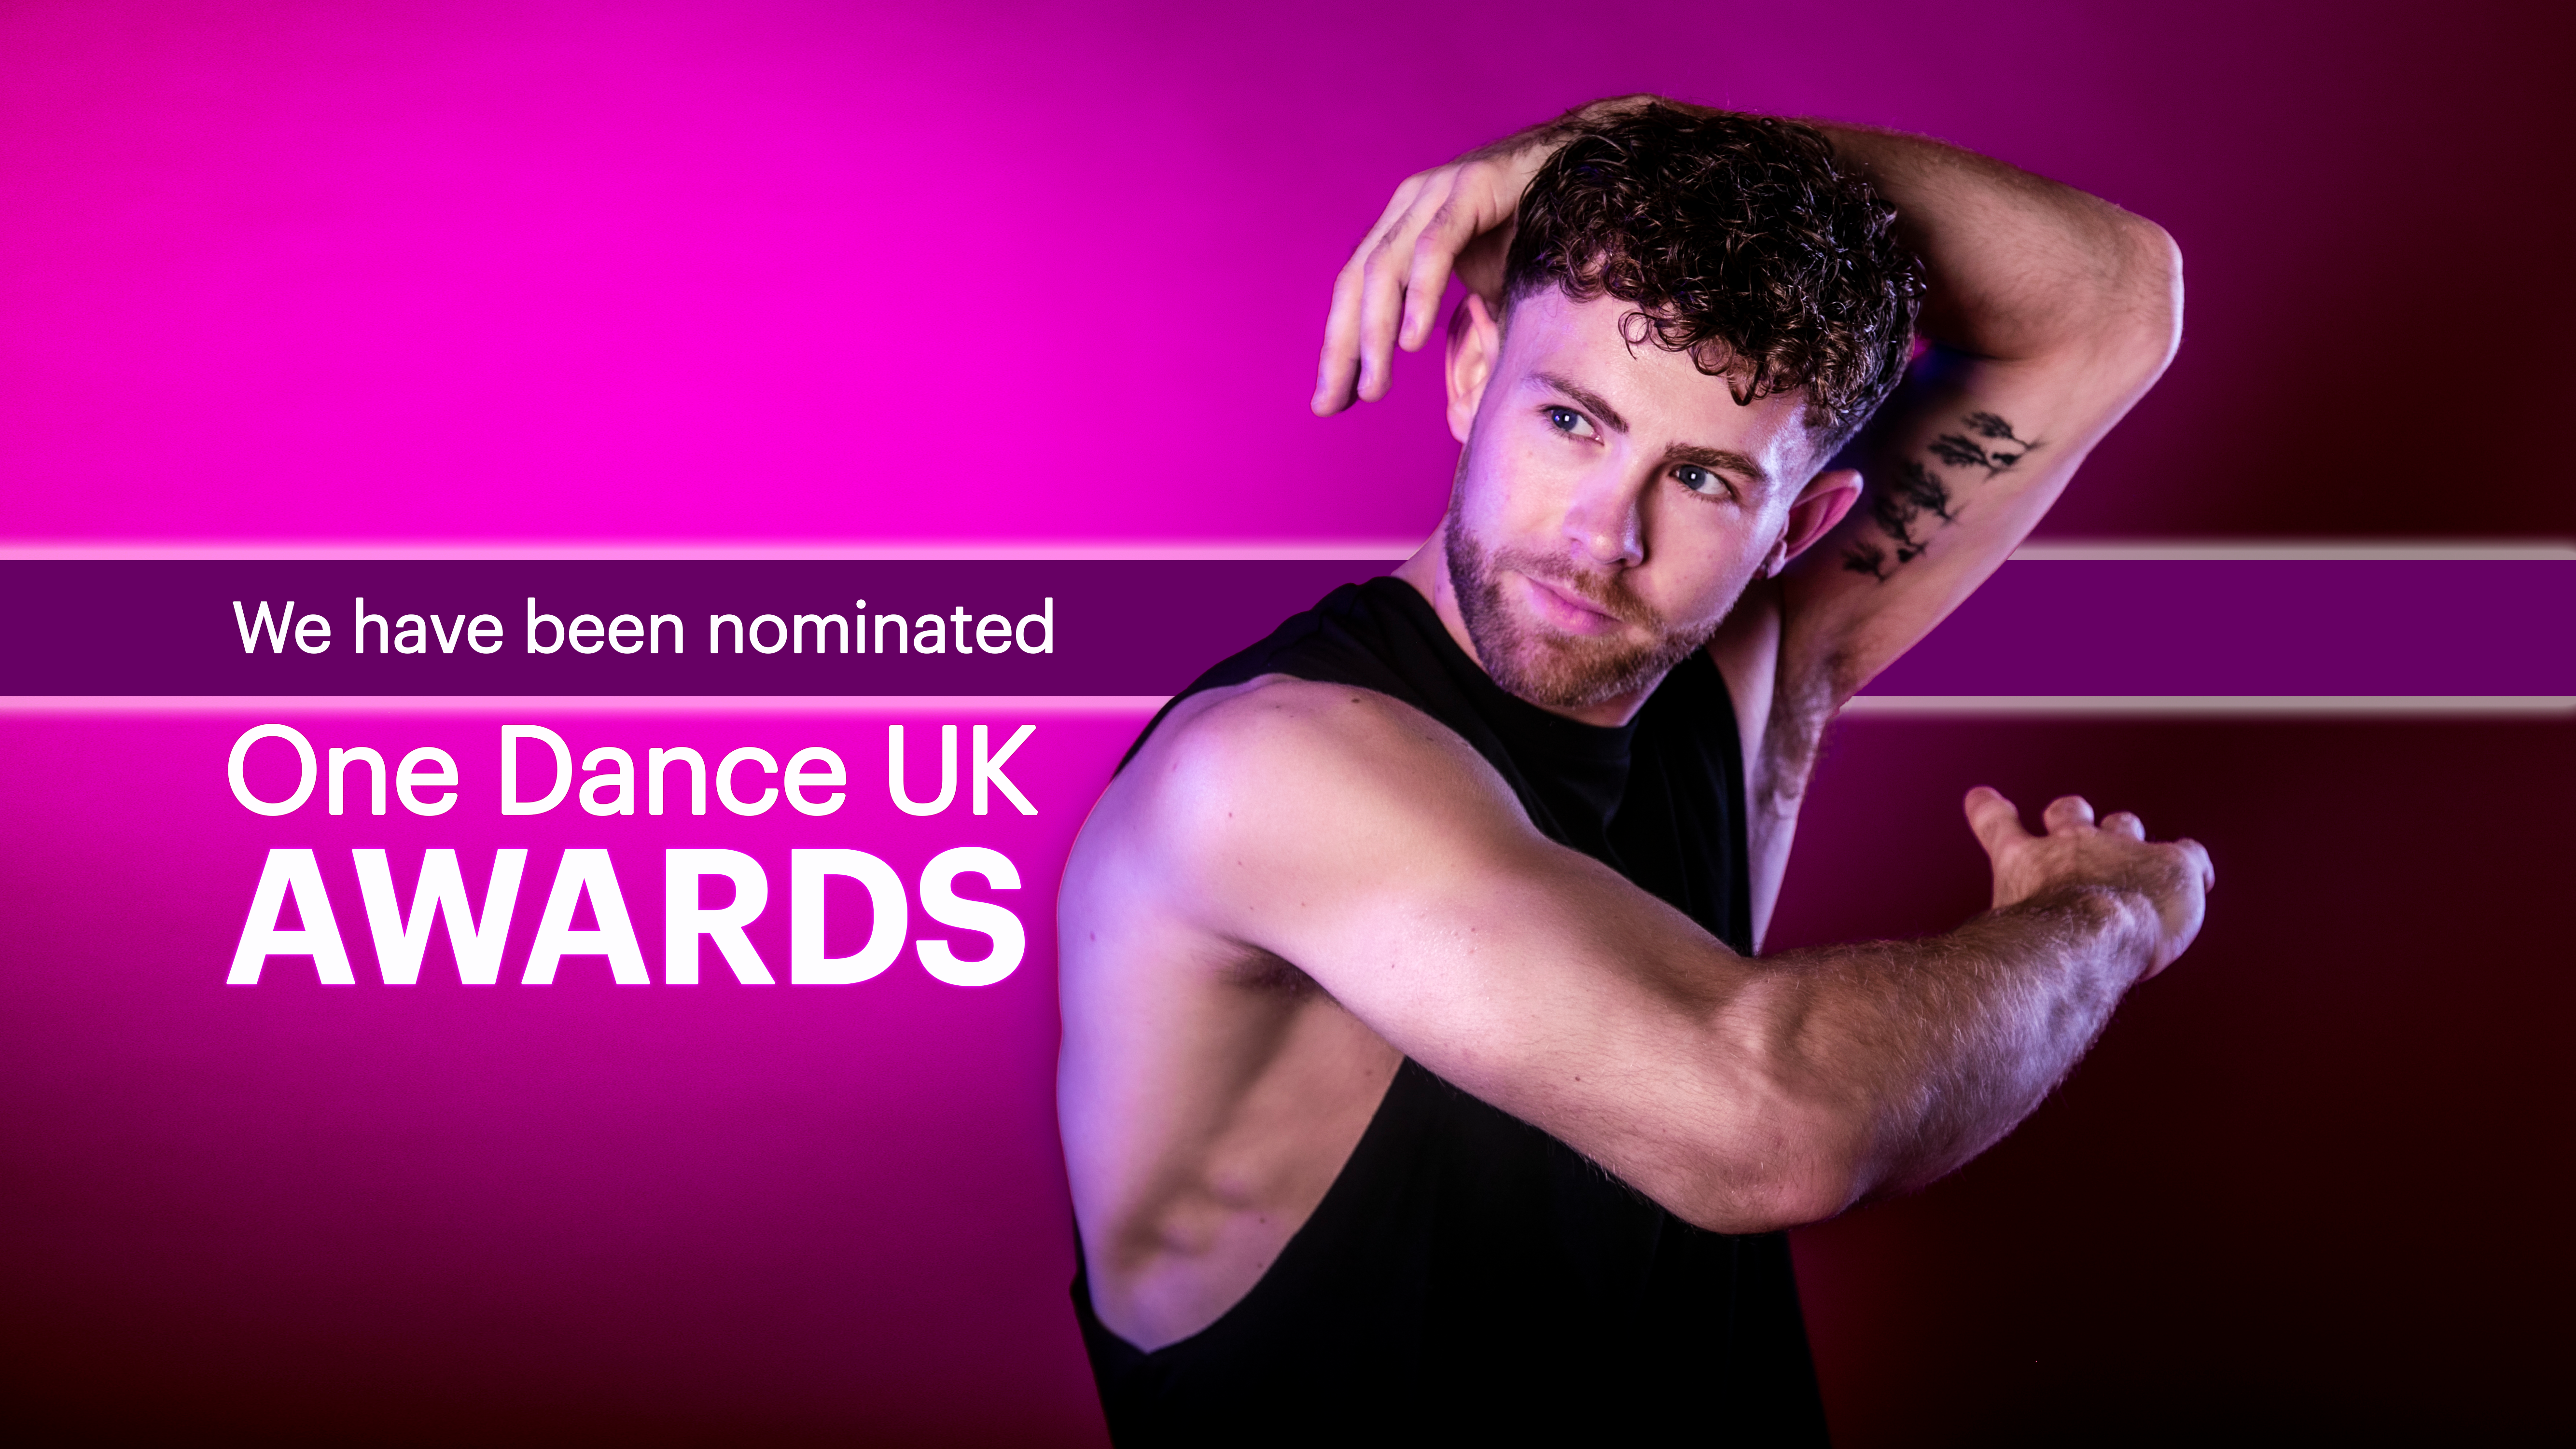 One Dance UK Awards Nomination graphic